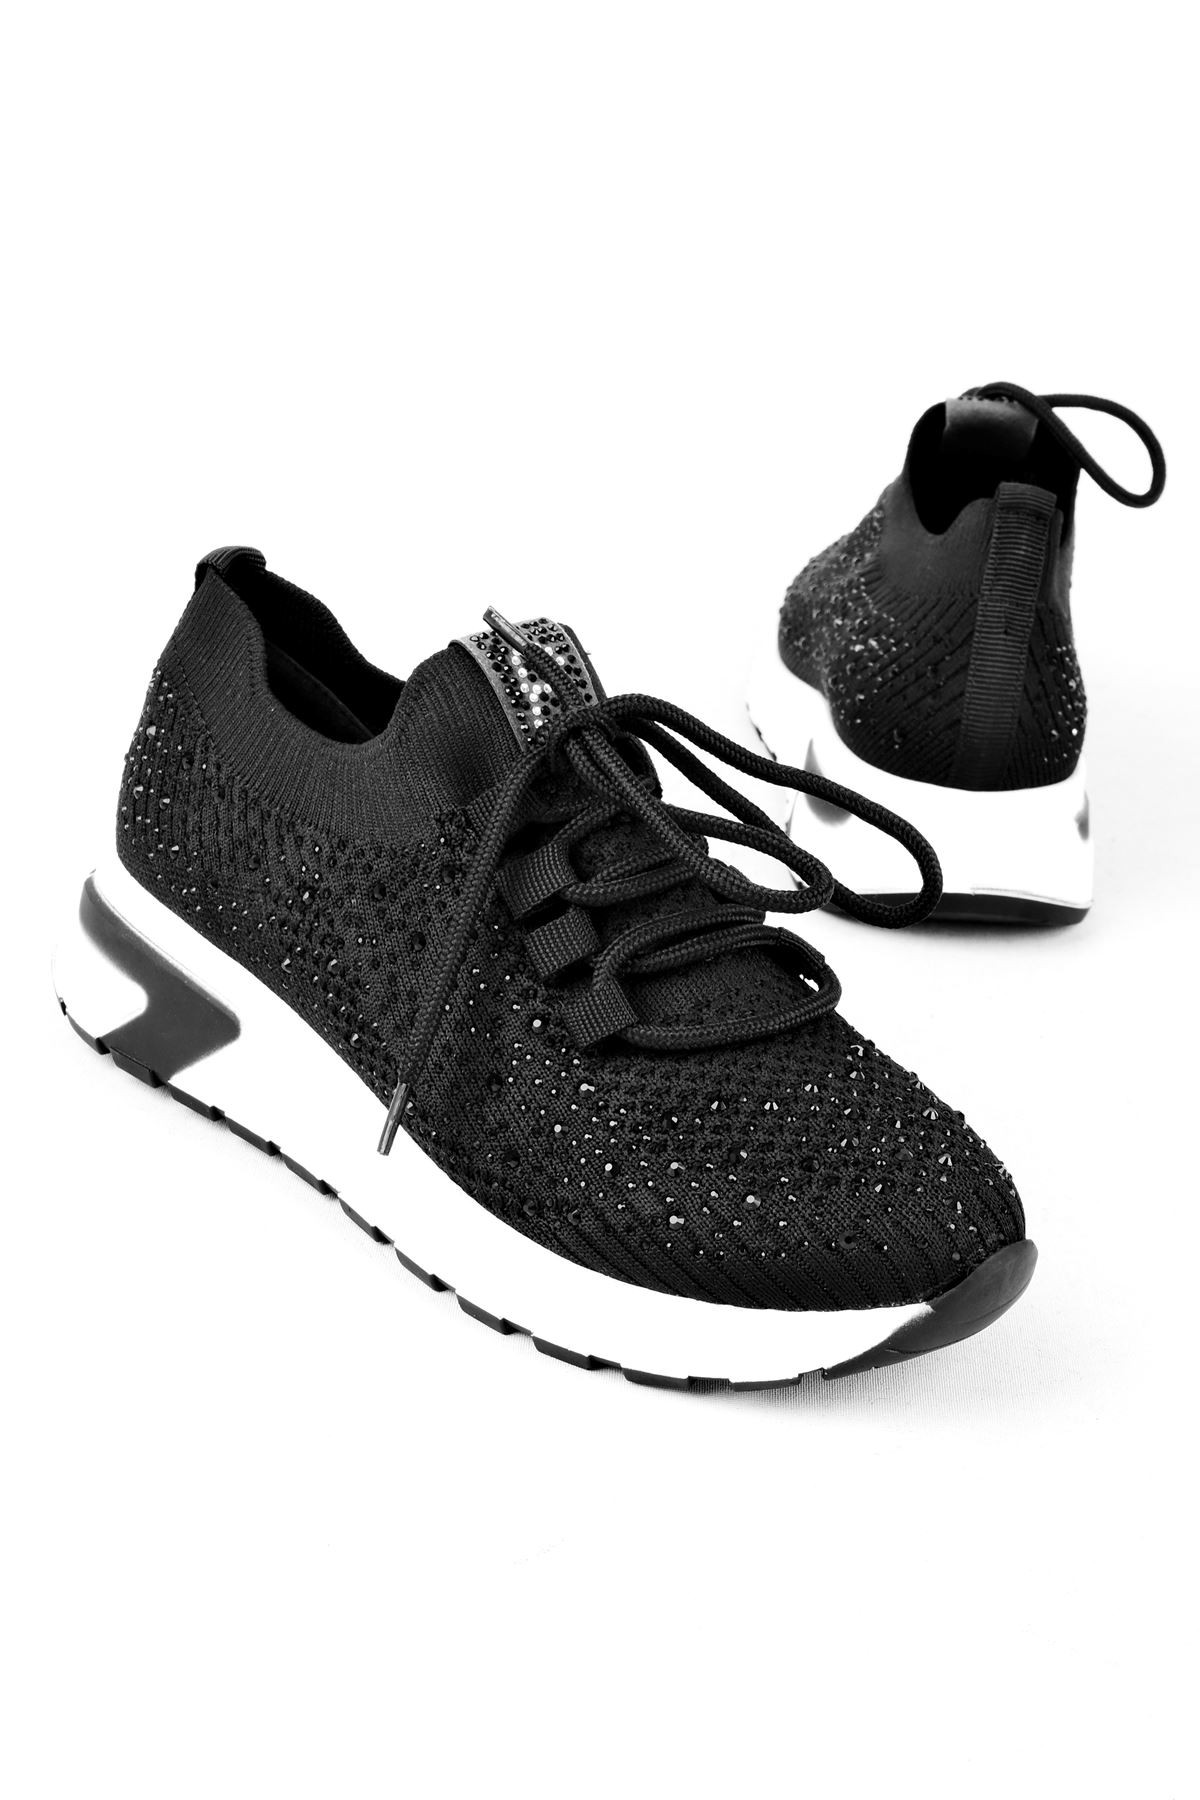 Nessy Triko Taşlı Kadın Spor Ayakkabı (B3081) - Siyah